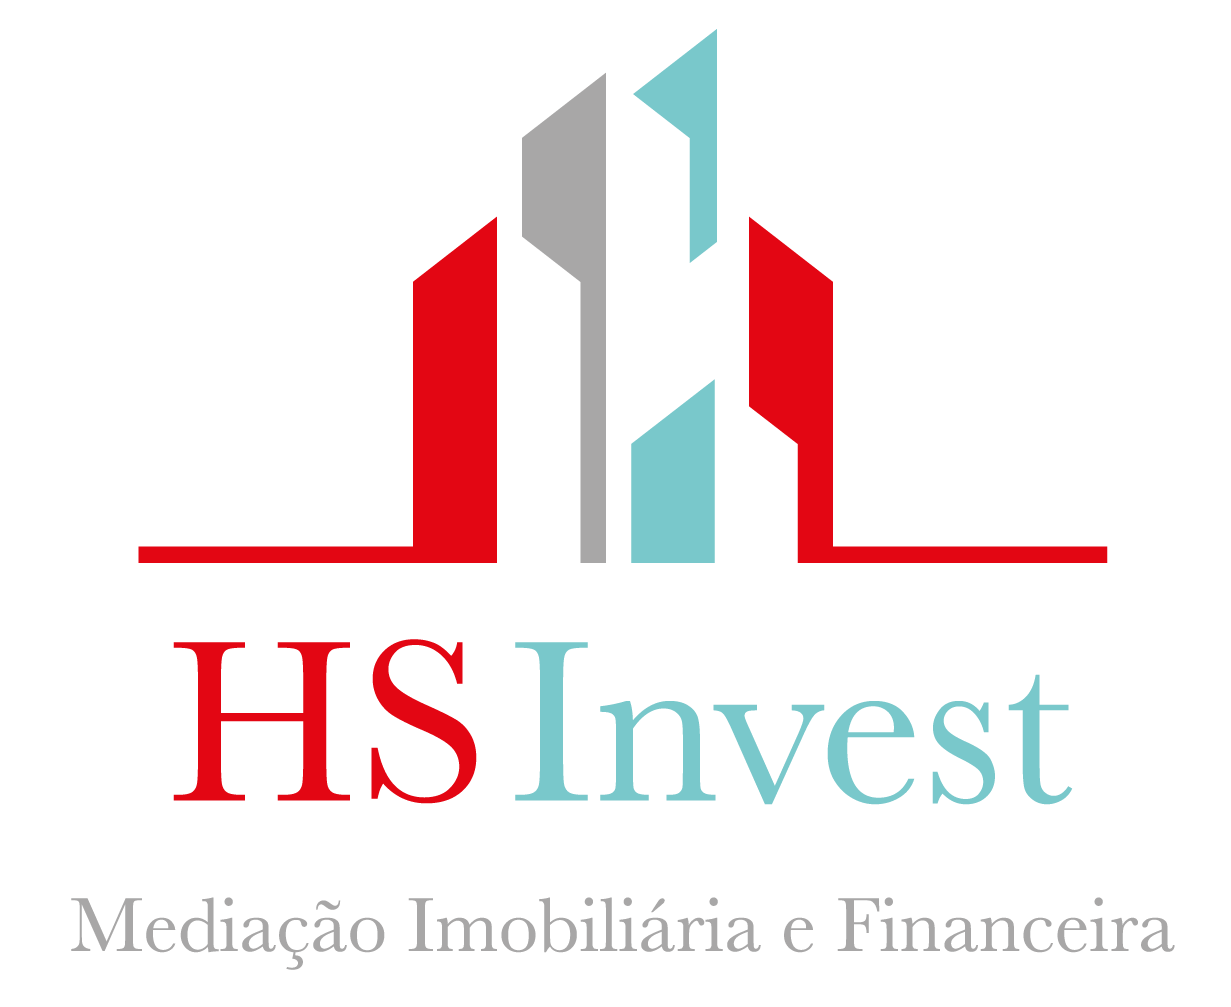 HSInvest Mediação Imobiliária e Financeira - Guia Imobiliário